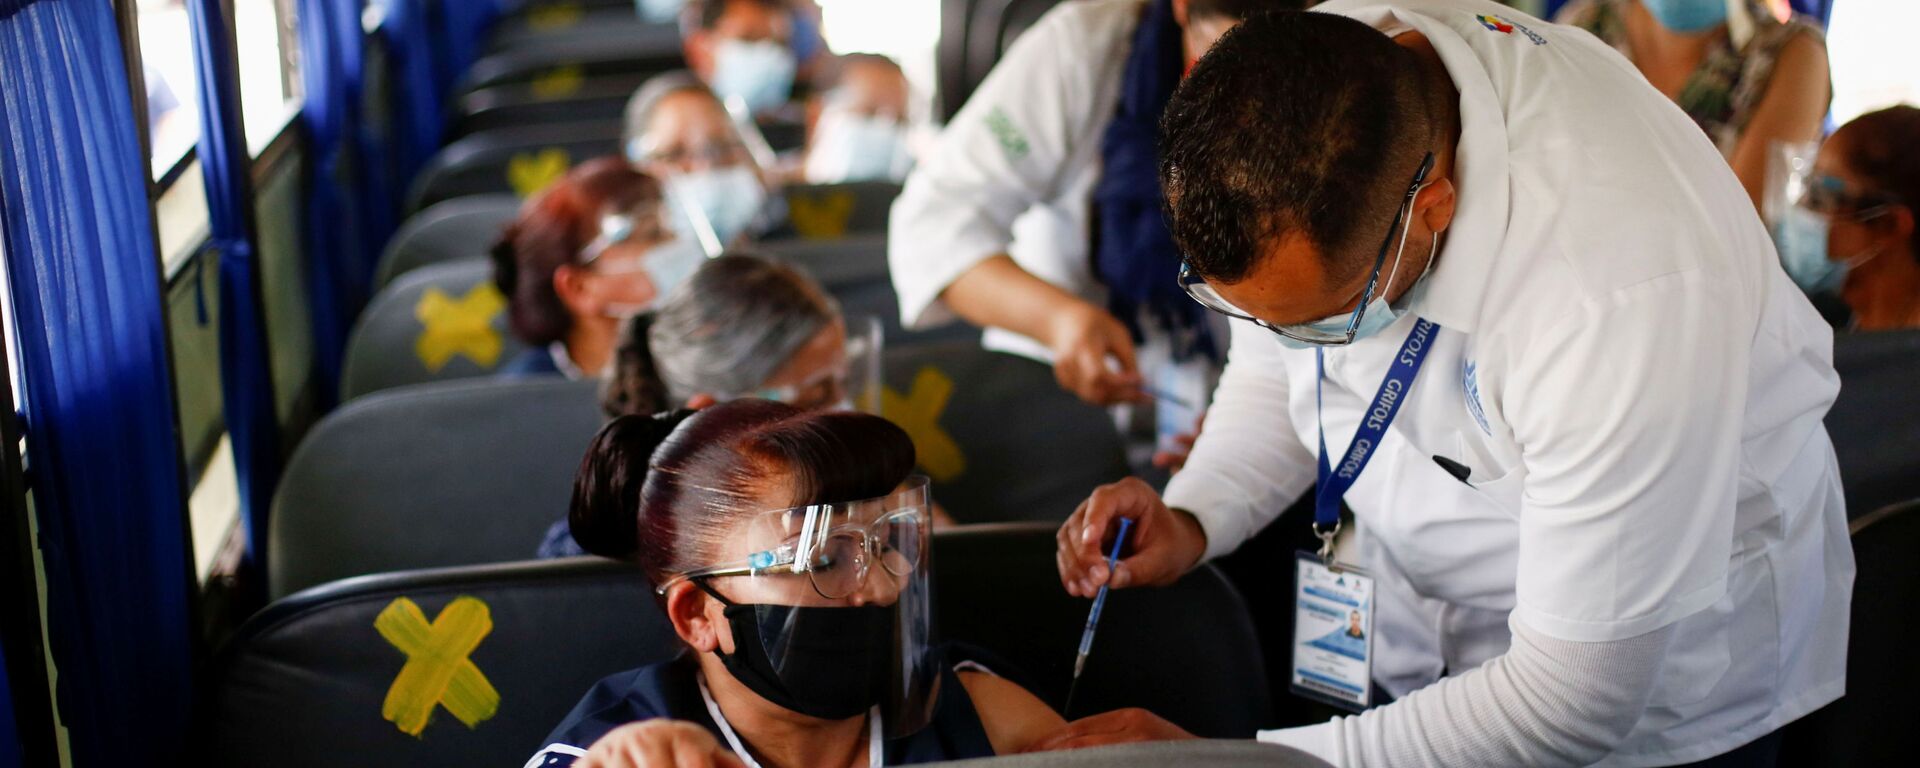 Сотрудники получают дозу вакцины от коронавируса Pfizer-BioNTech (COVID-19) в автобусе в Сьюдад-Хуарес, Мексика - Sputnik Lietuva, 1920, 02.06.2021